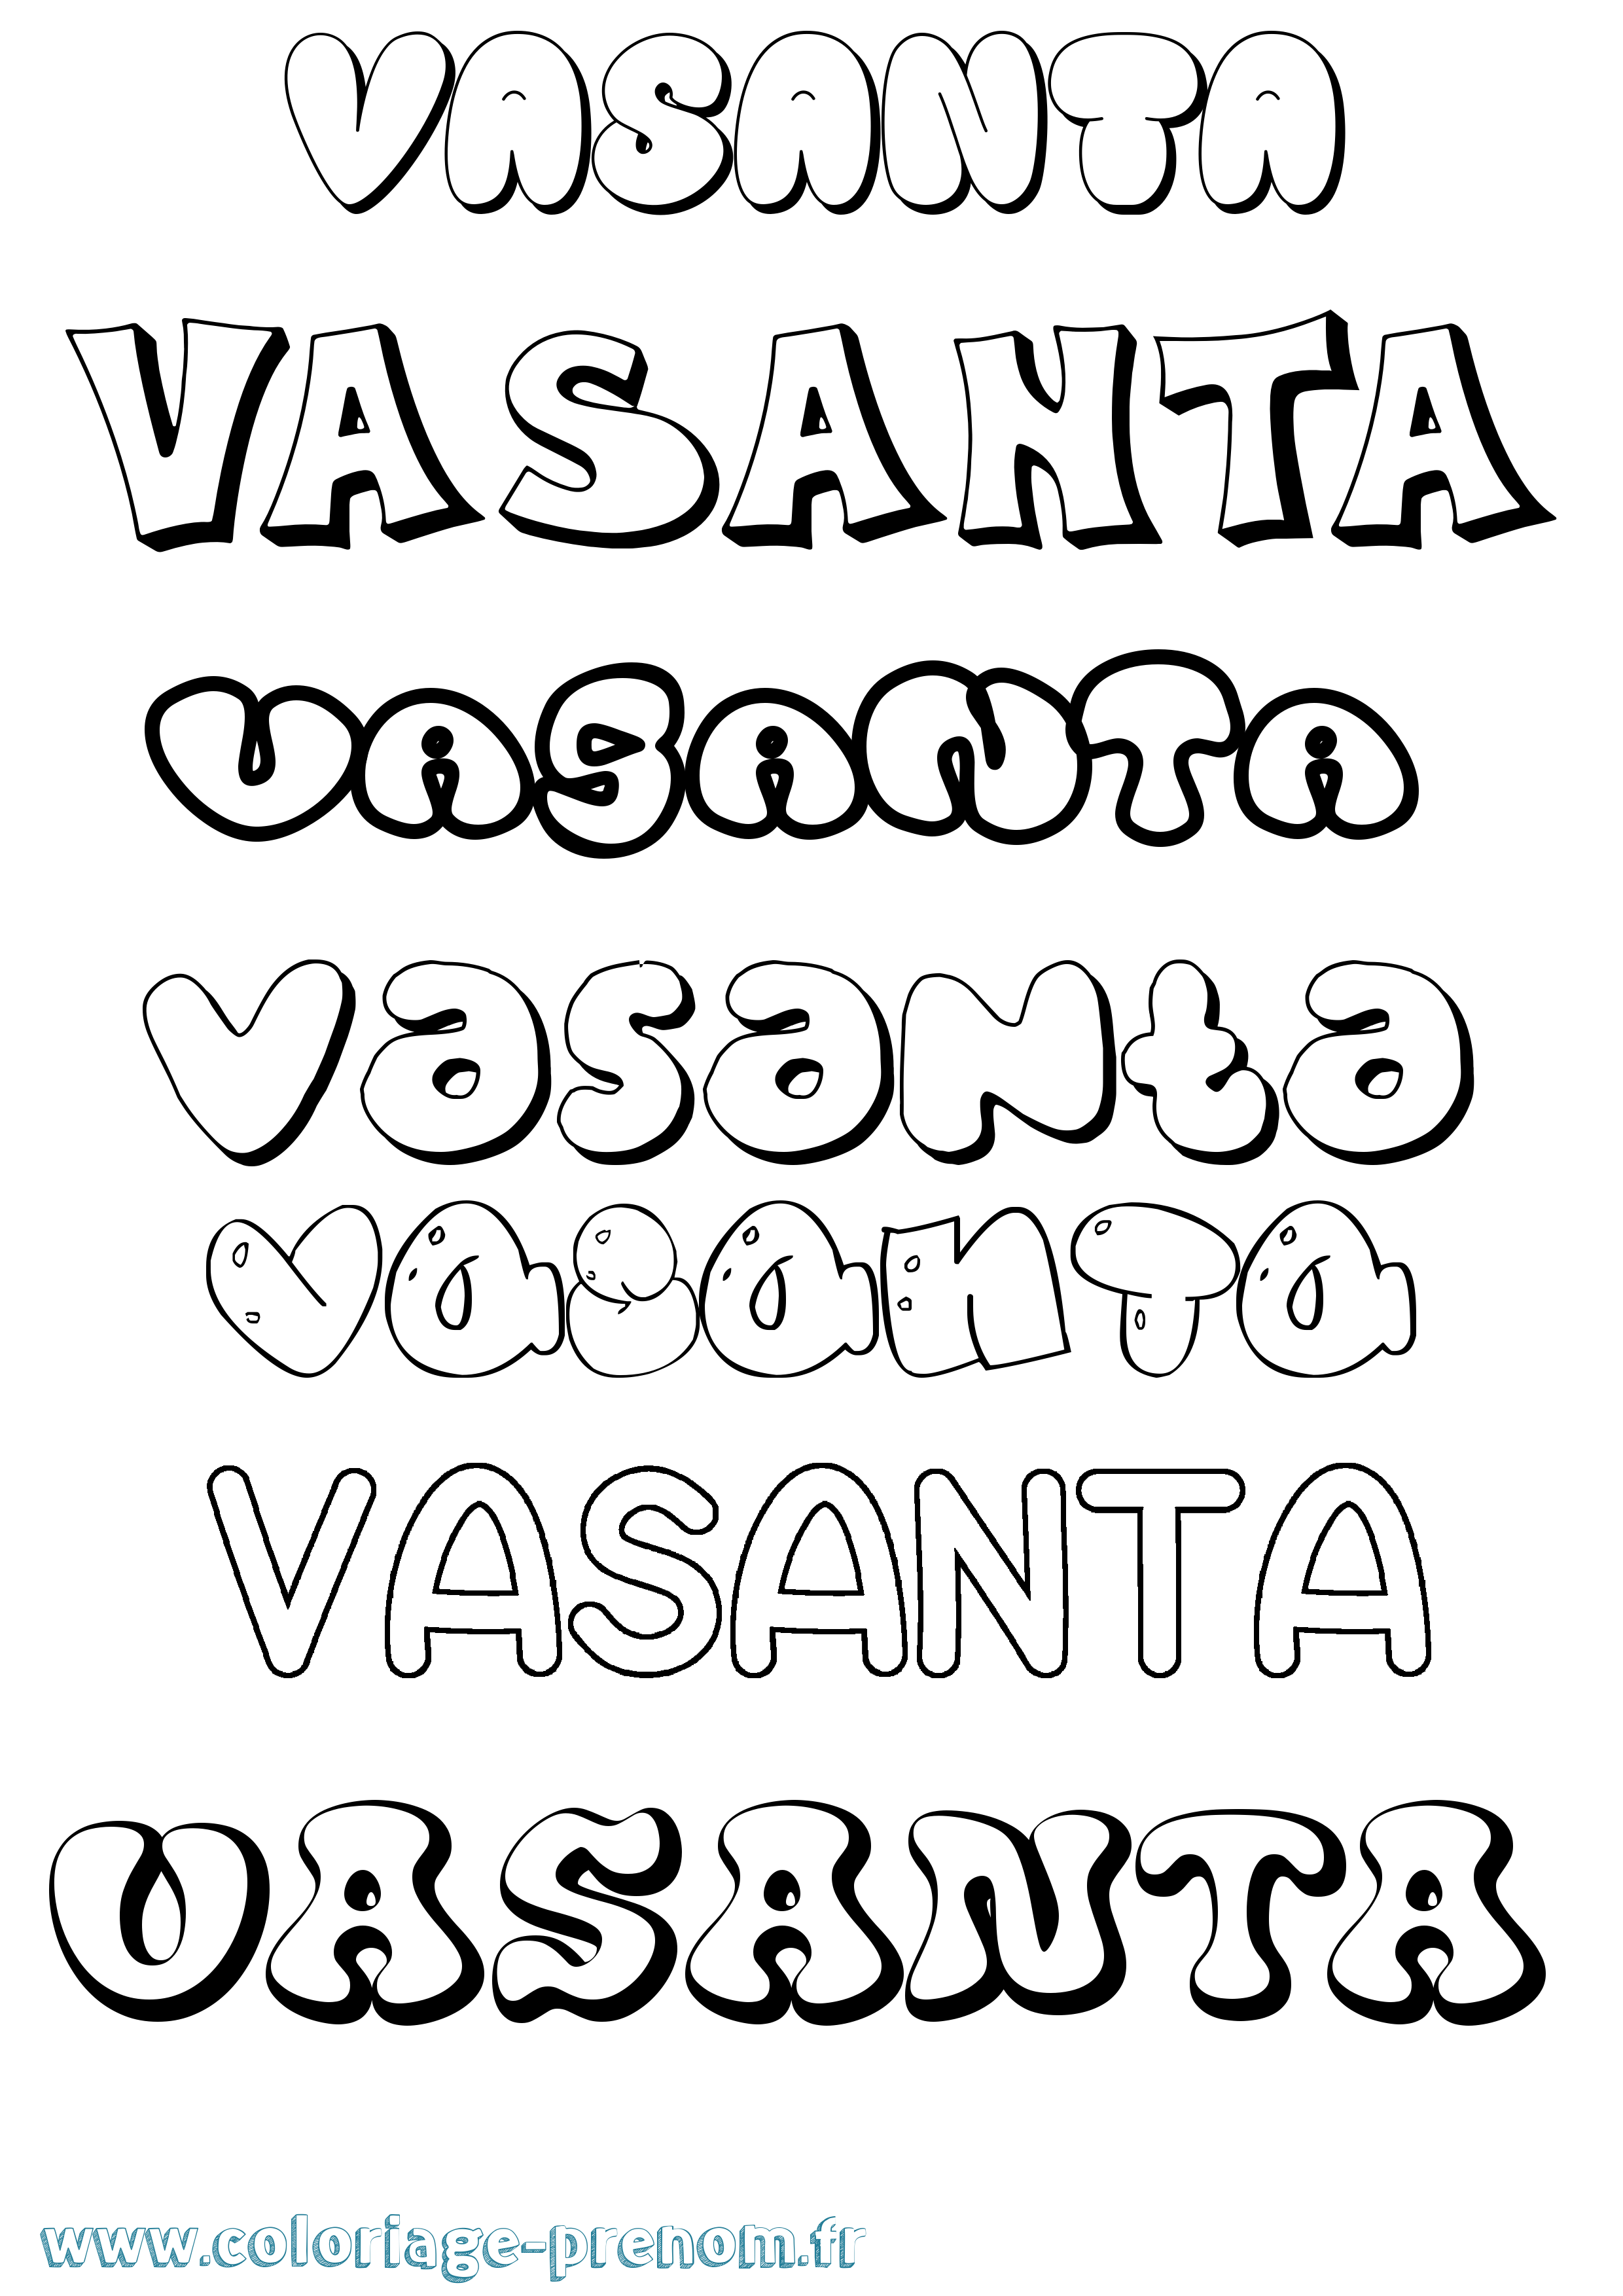 Coloriage prénom Vasanta Bubble